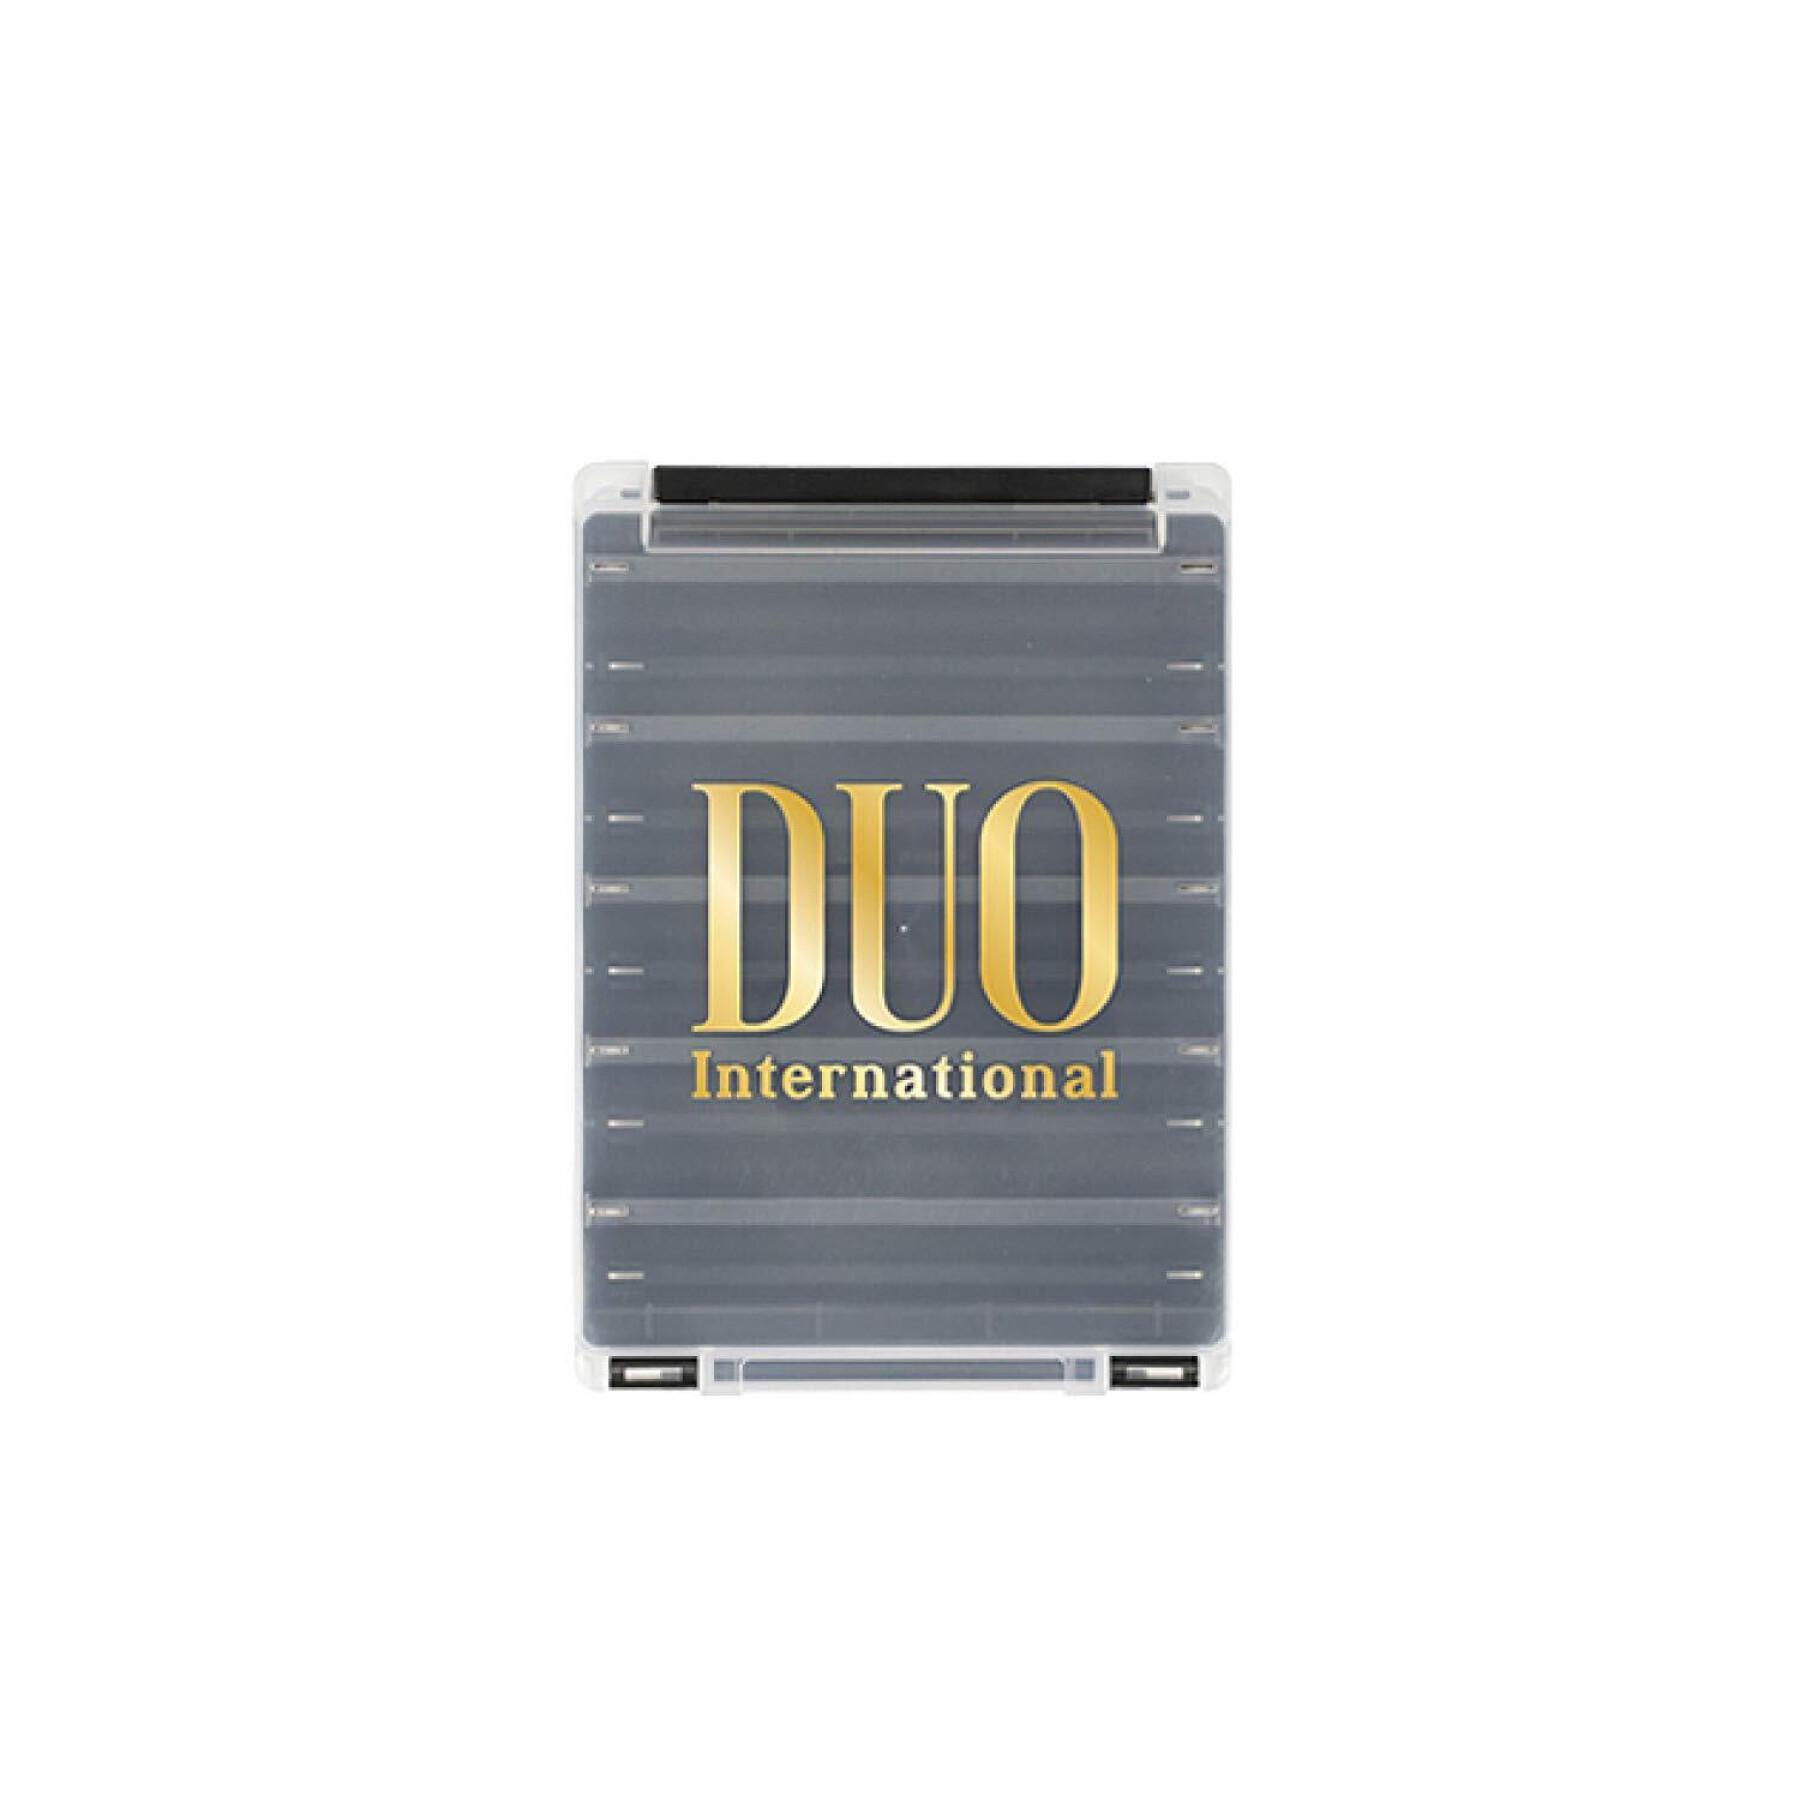 caja del señuelo Duo 140